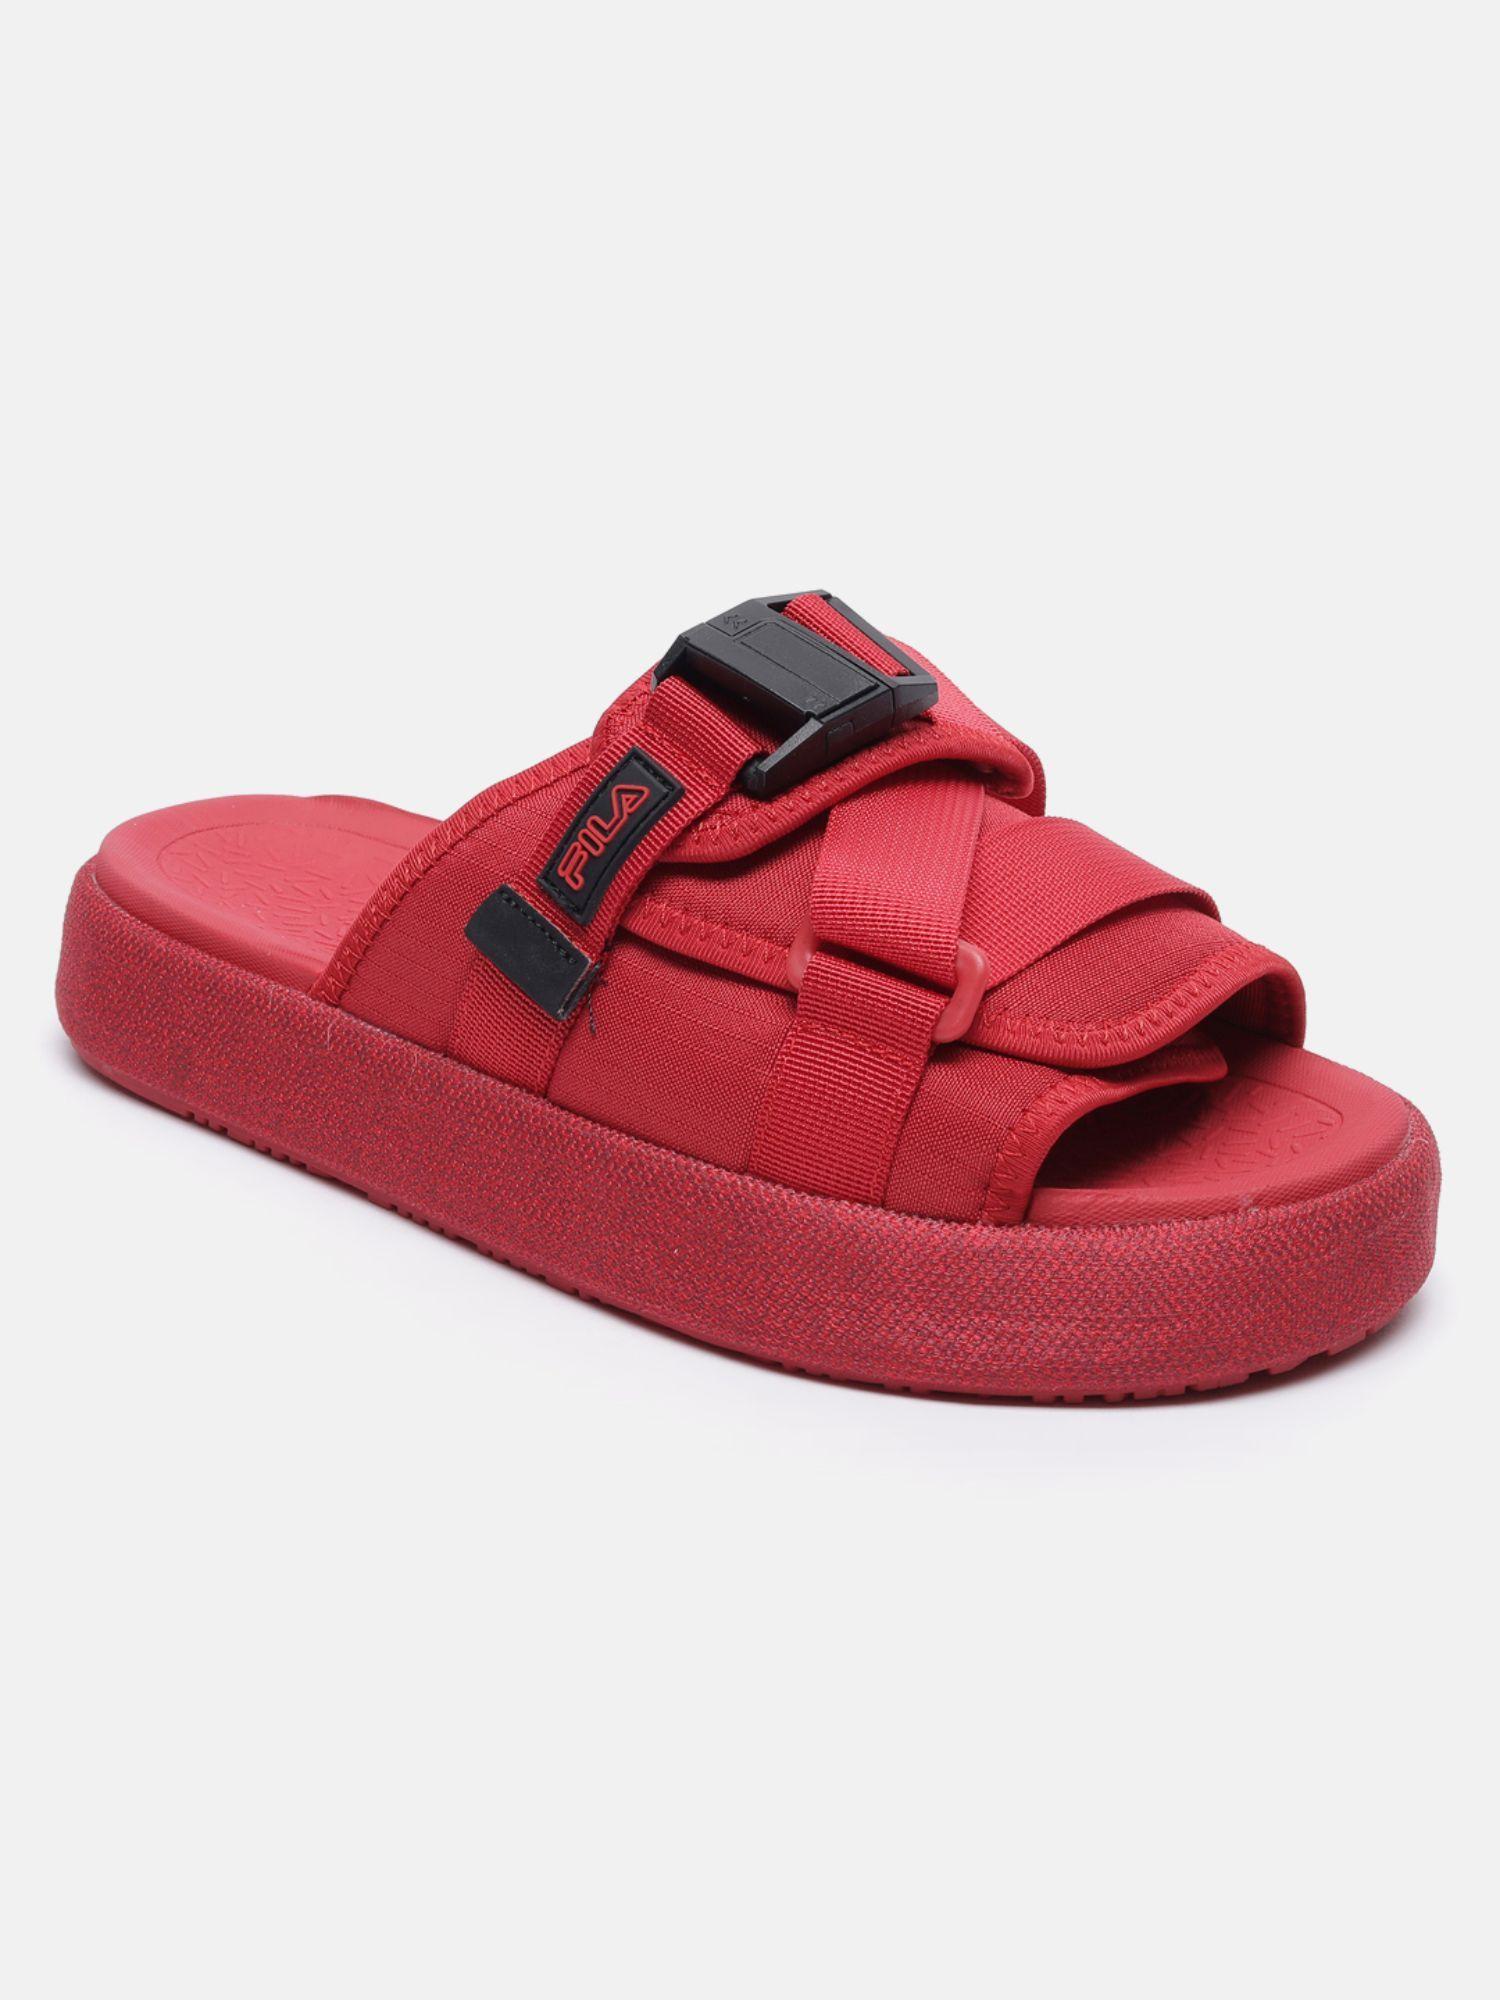 men red atlas sandal sliders